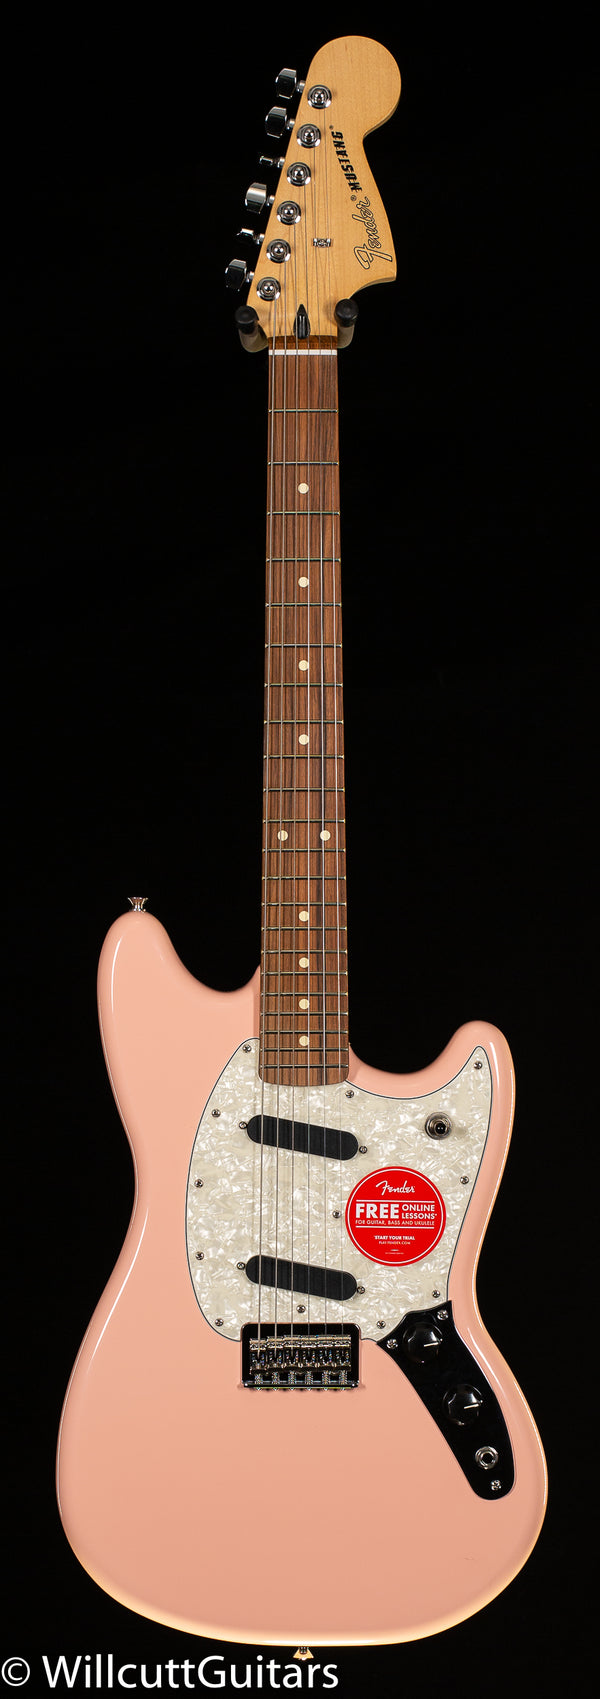 Player Fender Willcutt Guitars (165) - Mustang Pink Shell